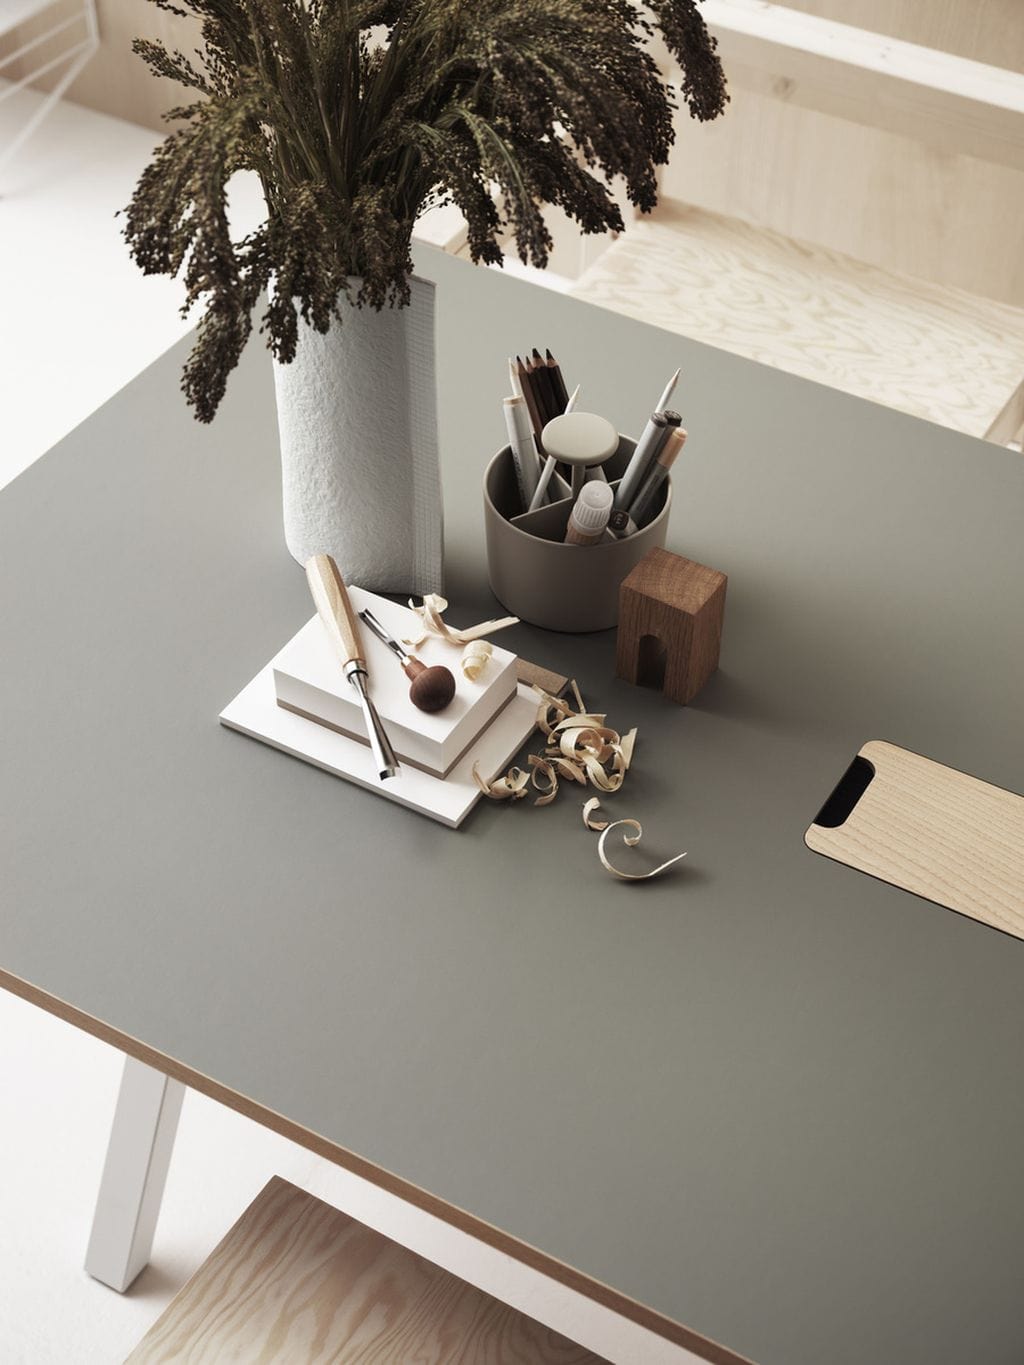 Tabla de trabajo ajustable de muebles de muebles de cuerda 90x180 cm, linóleo gris claro